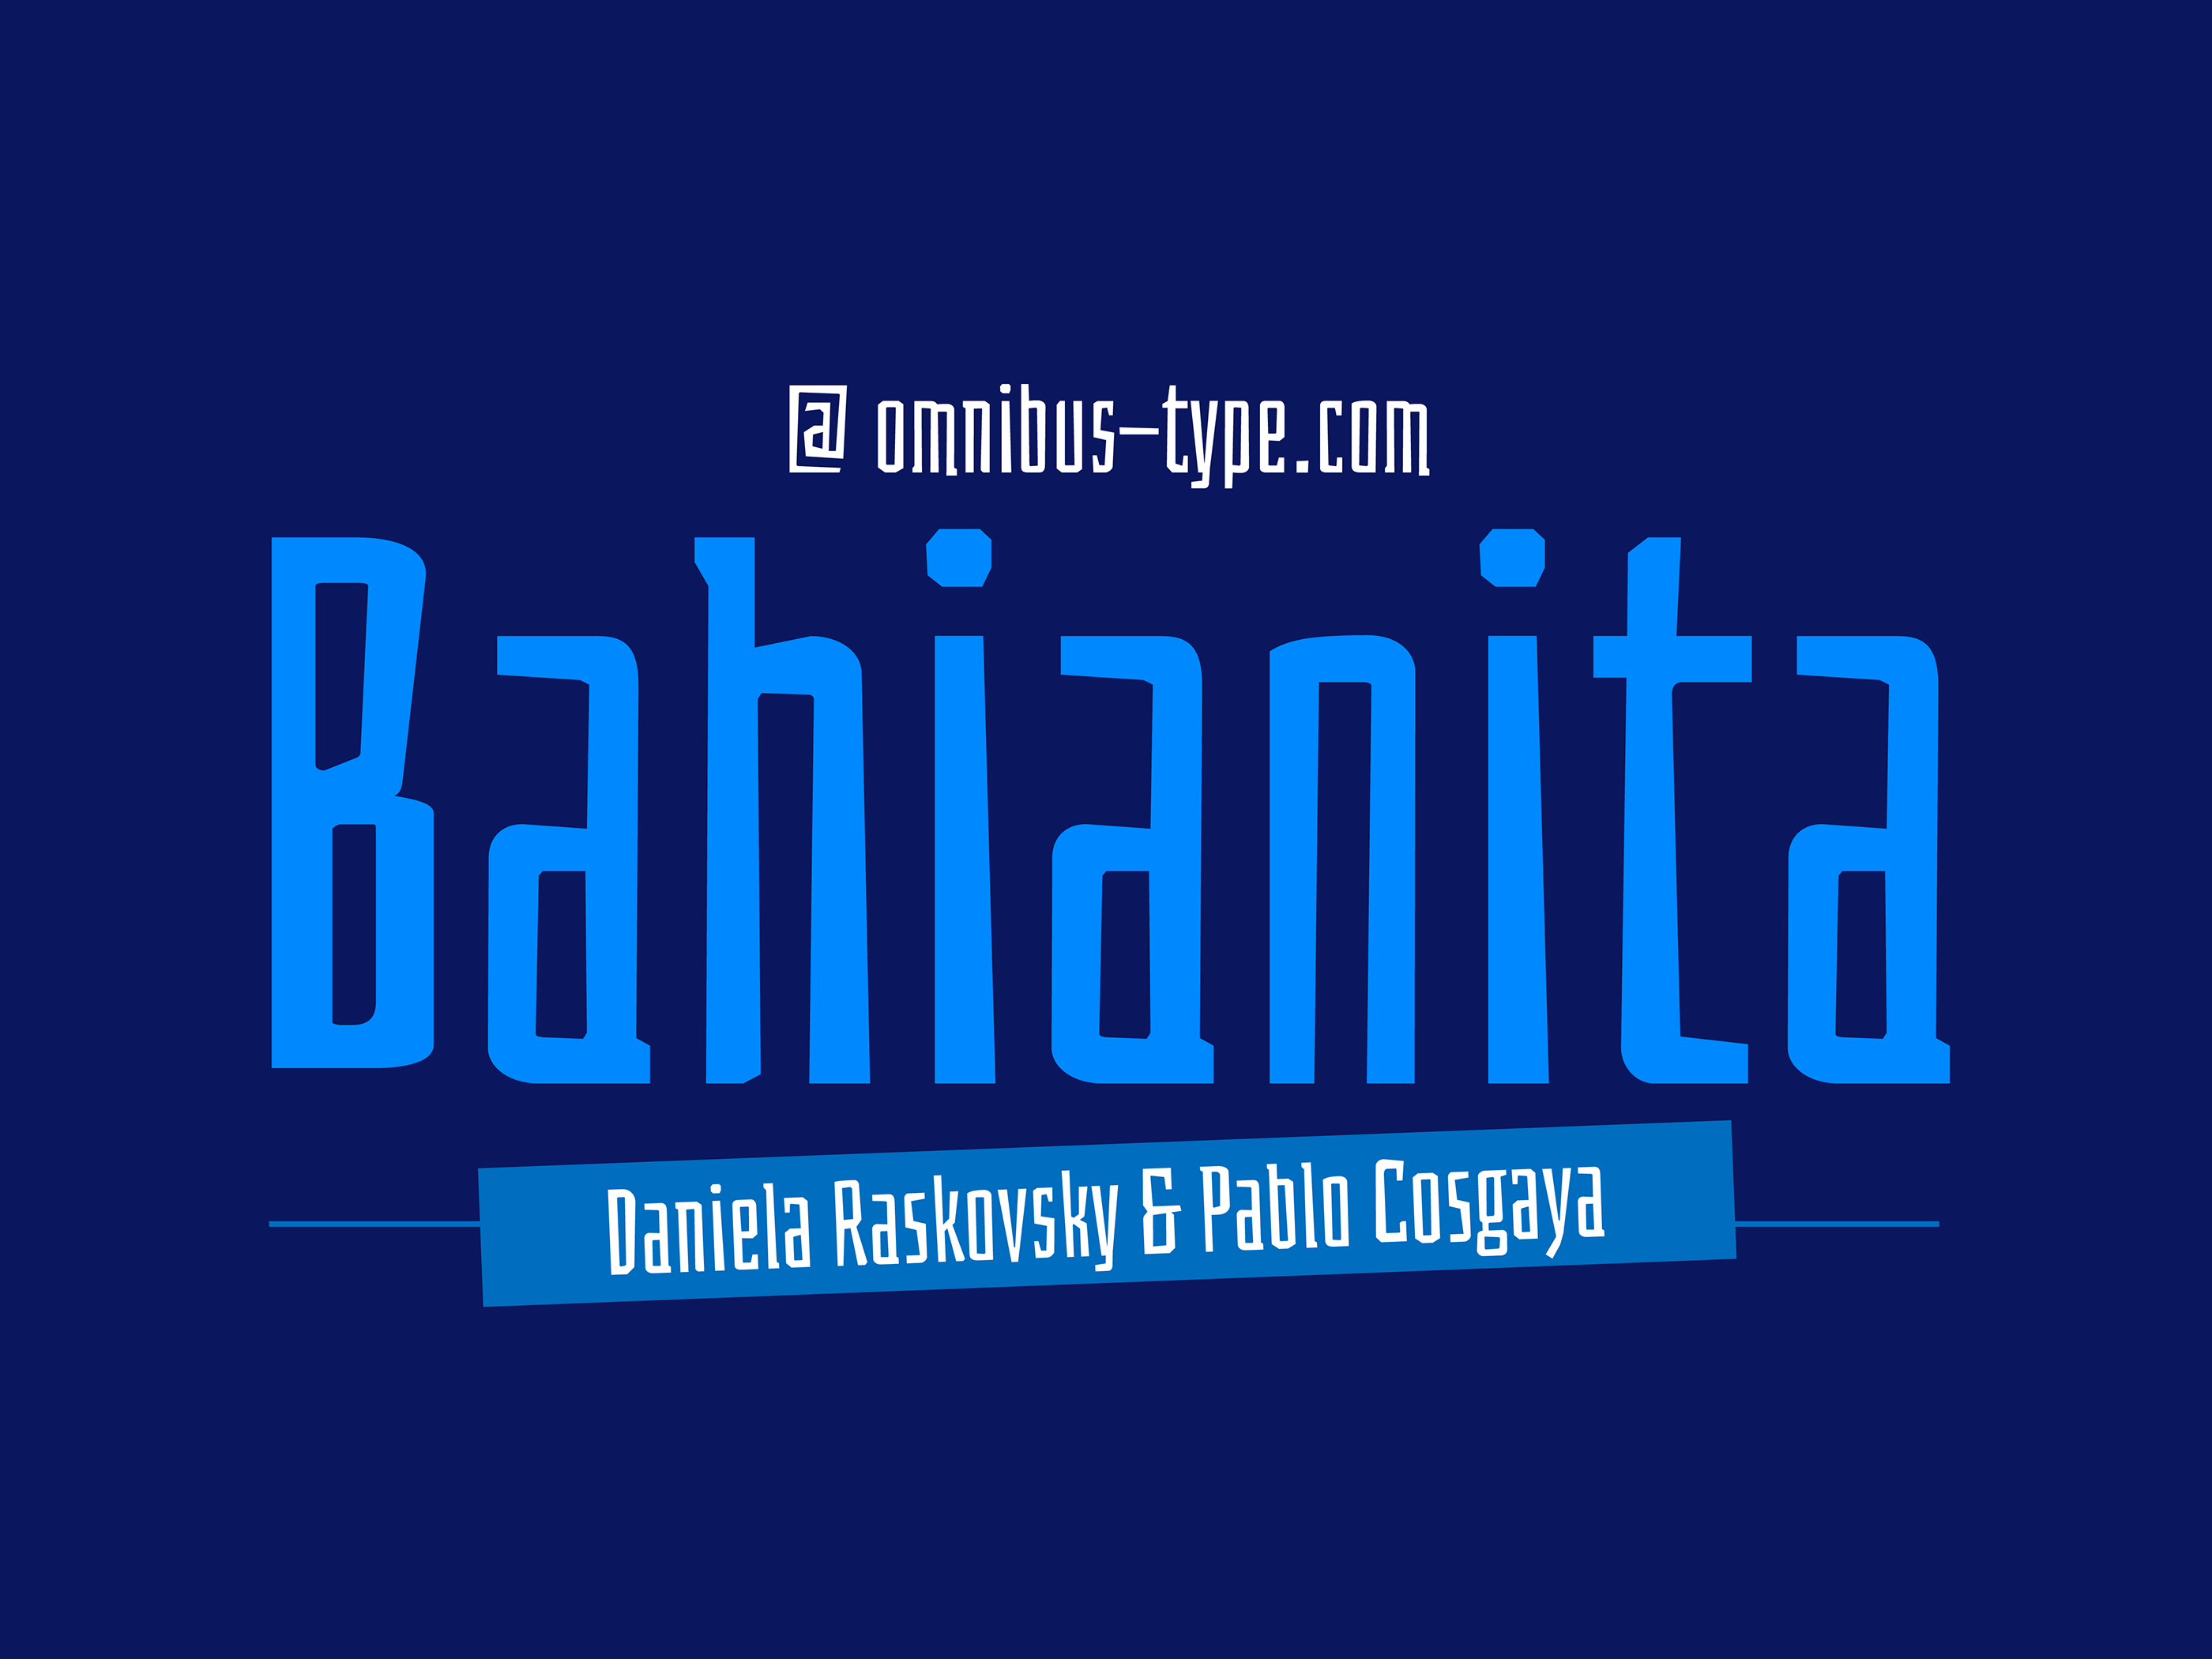 Police Bahianita